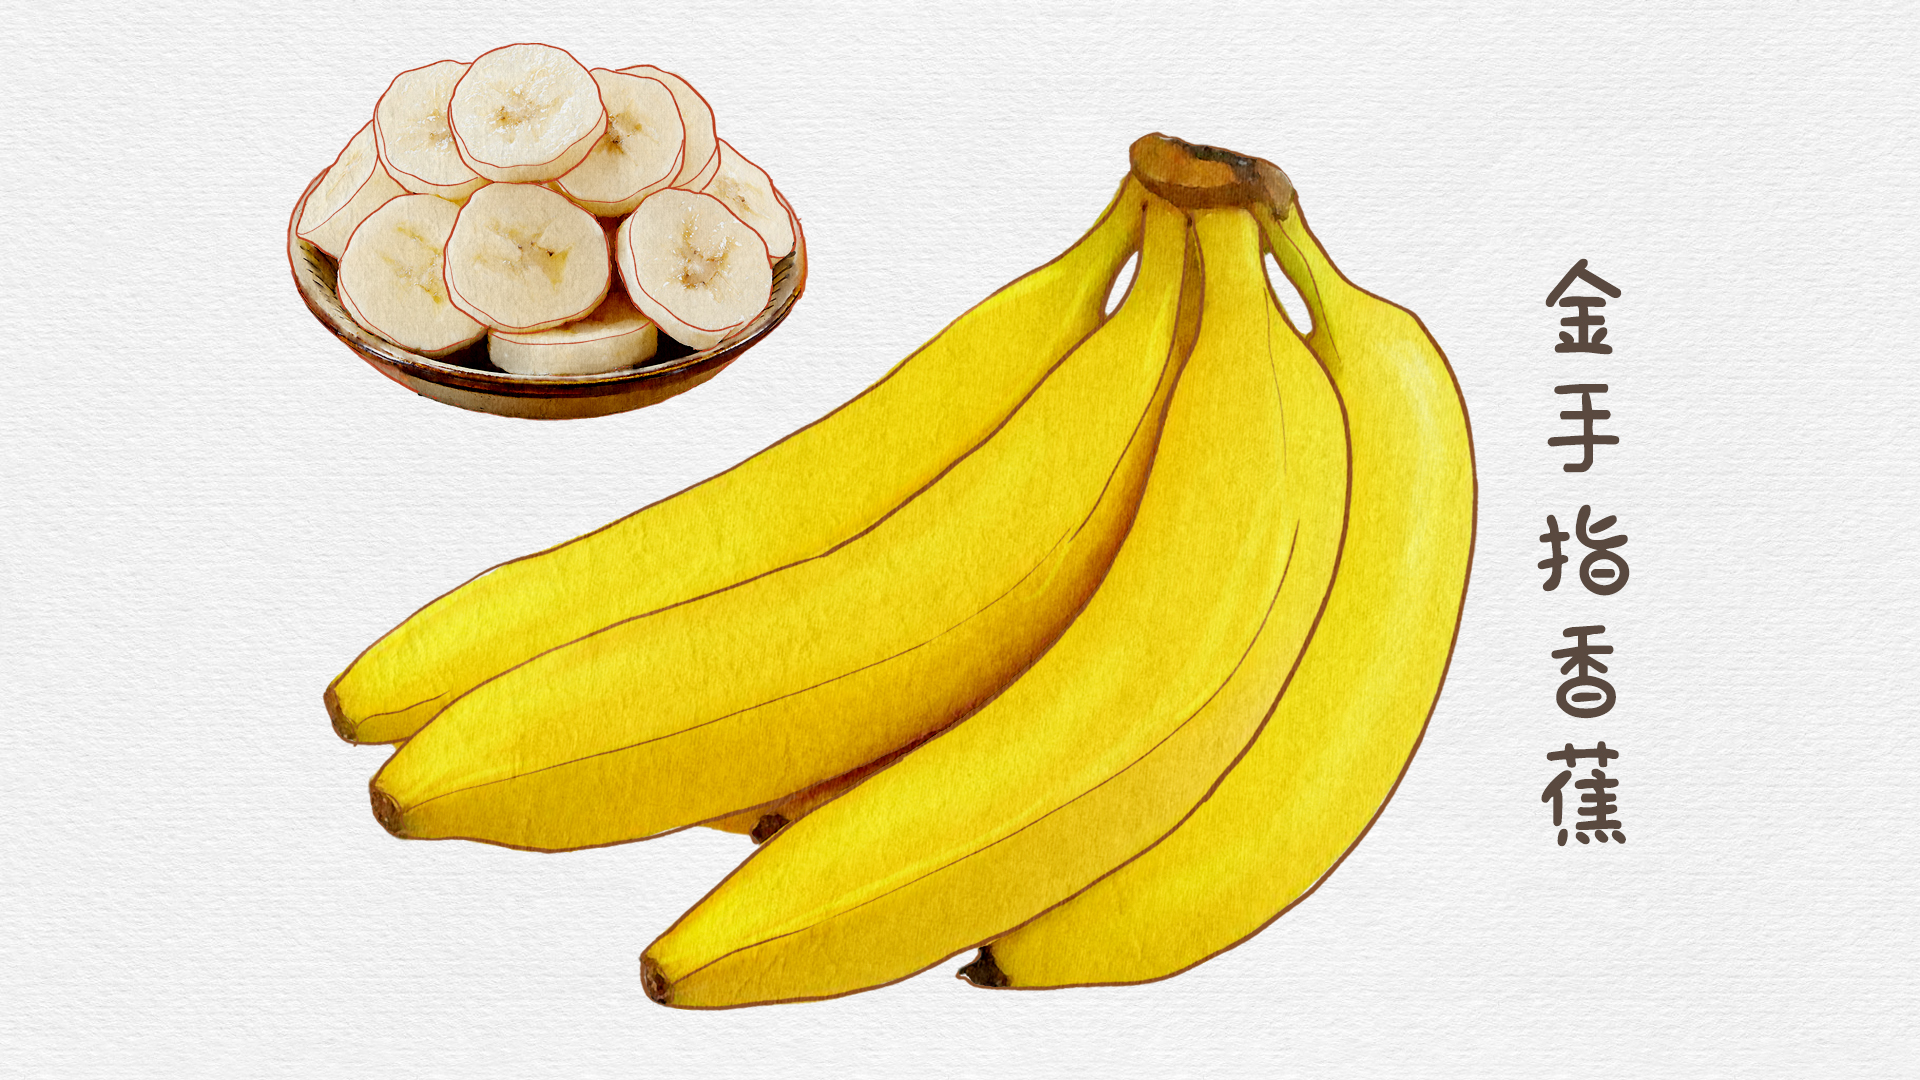 剥皮香蕉图片大全-剥皮香蕉高清图片下载-觅知网